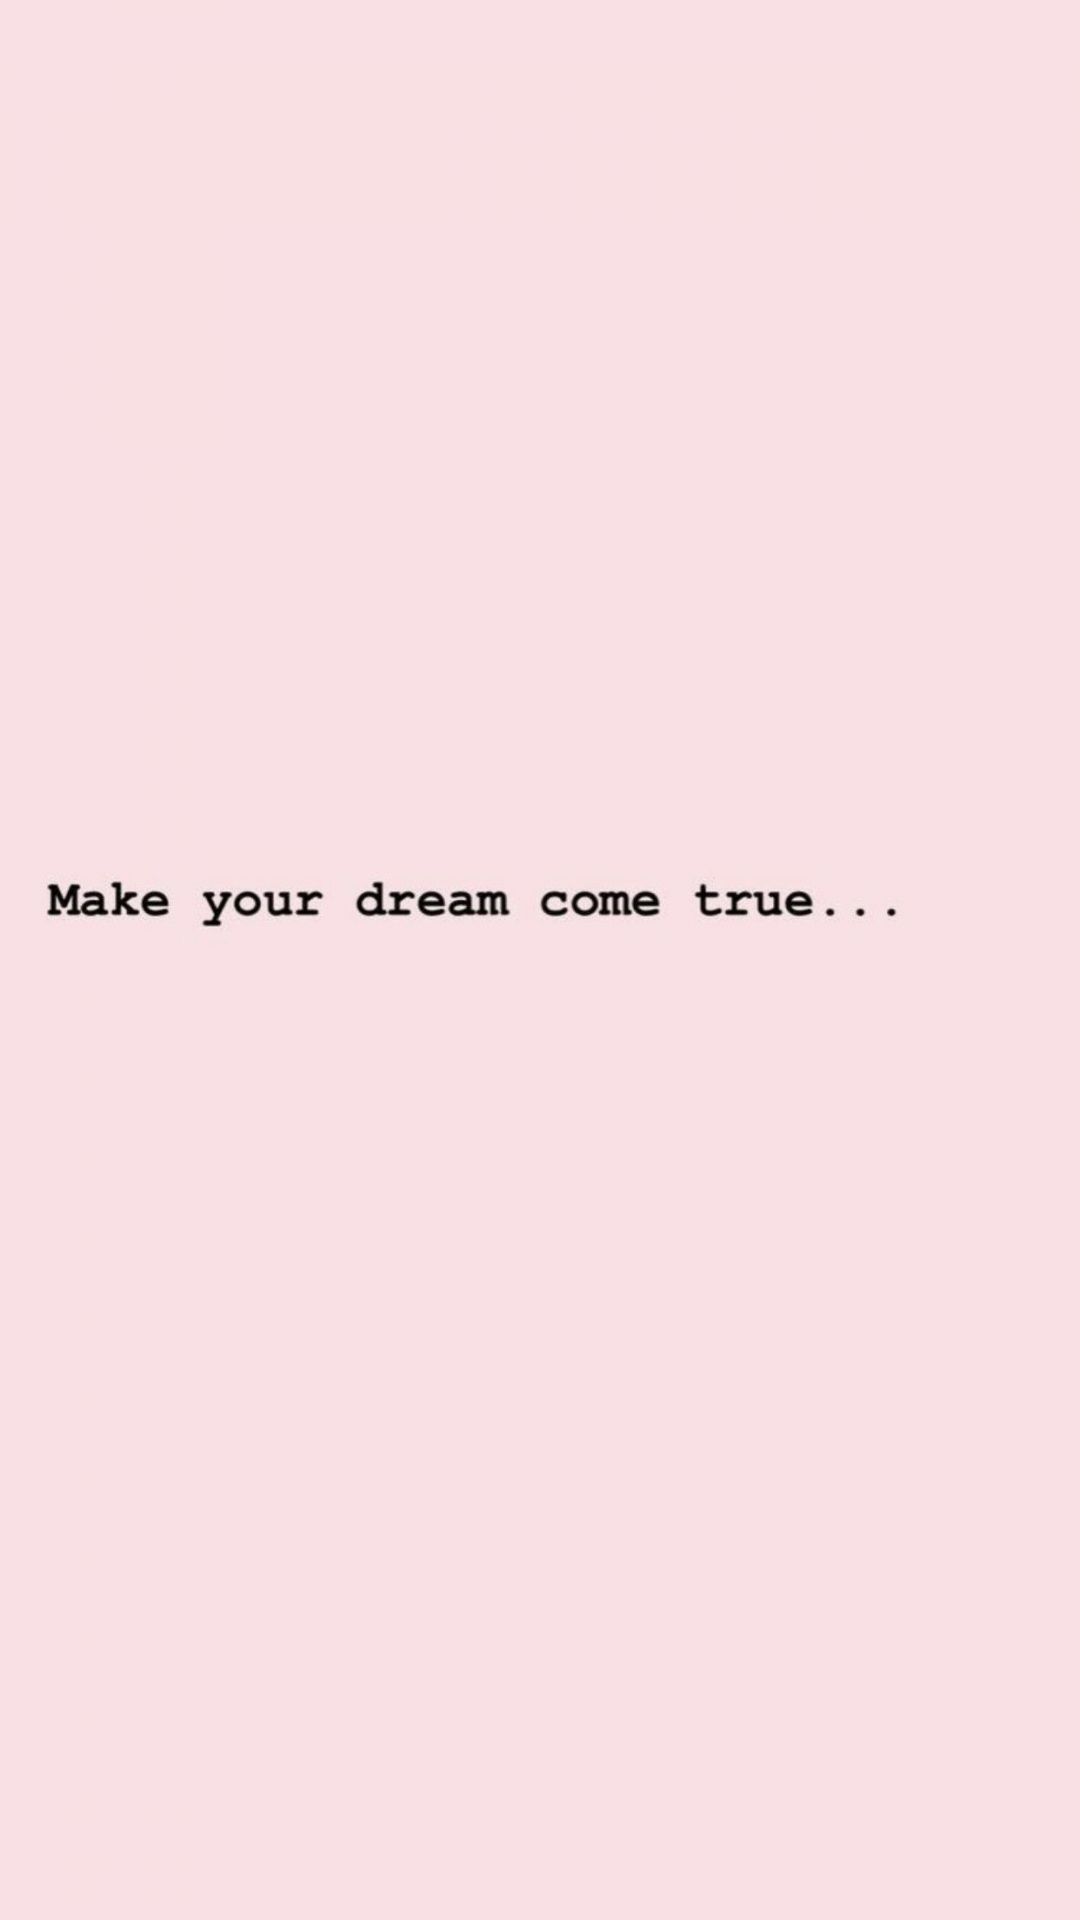 Make your dream come true - Quotes